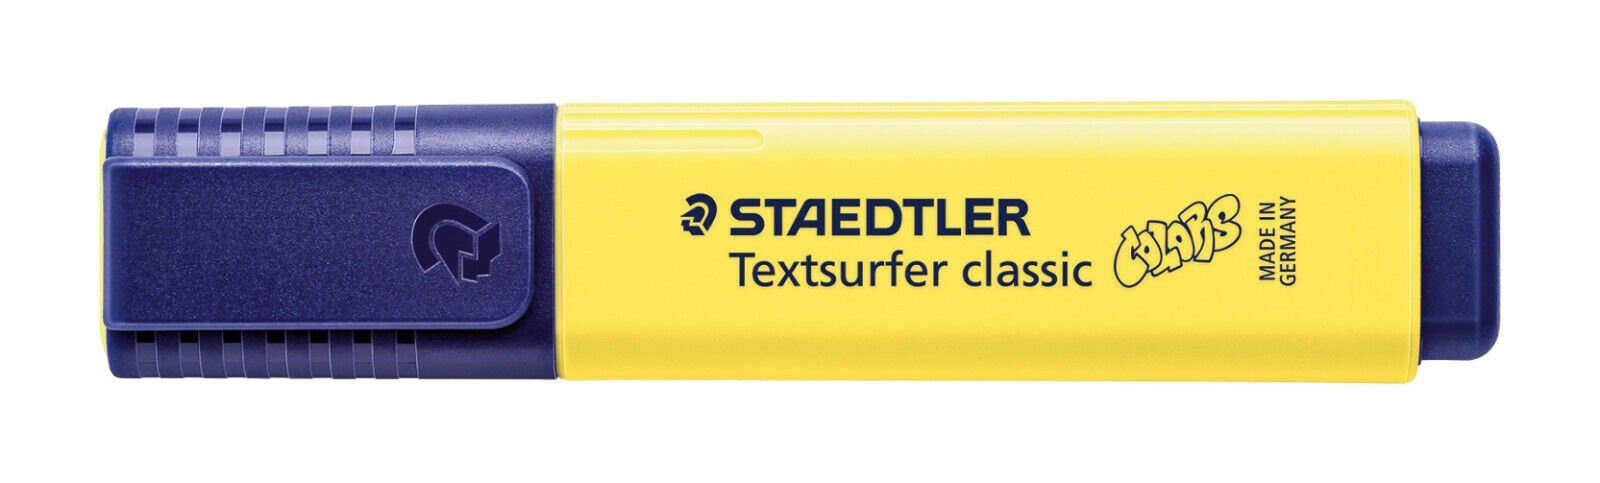 [Umfangreiche Produktpalette] STAEDTLER Marker 364 C-100 Textsurfer INK classic sonnenblume Staedtler JET Leuchtstift, SAFE colors